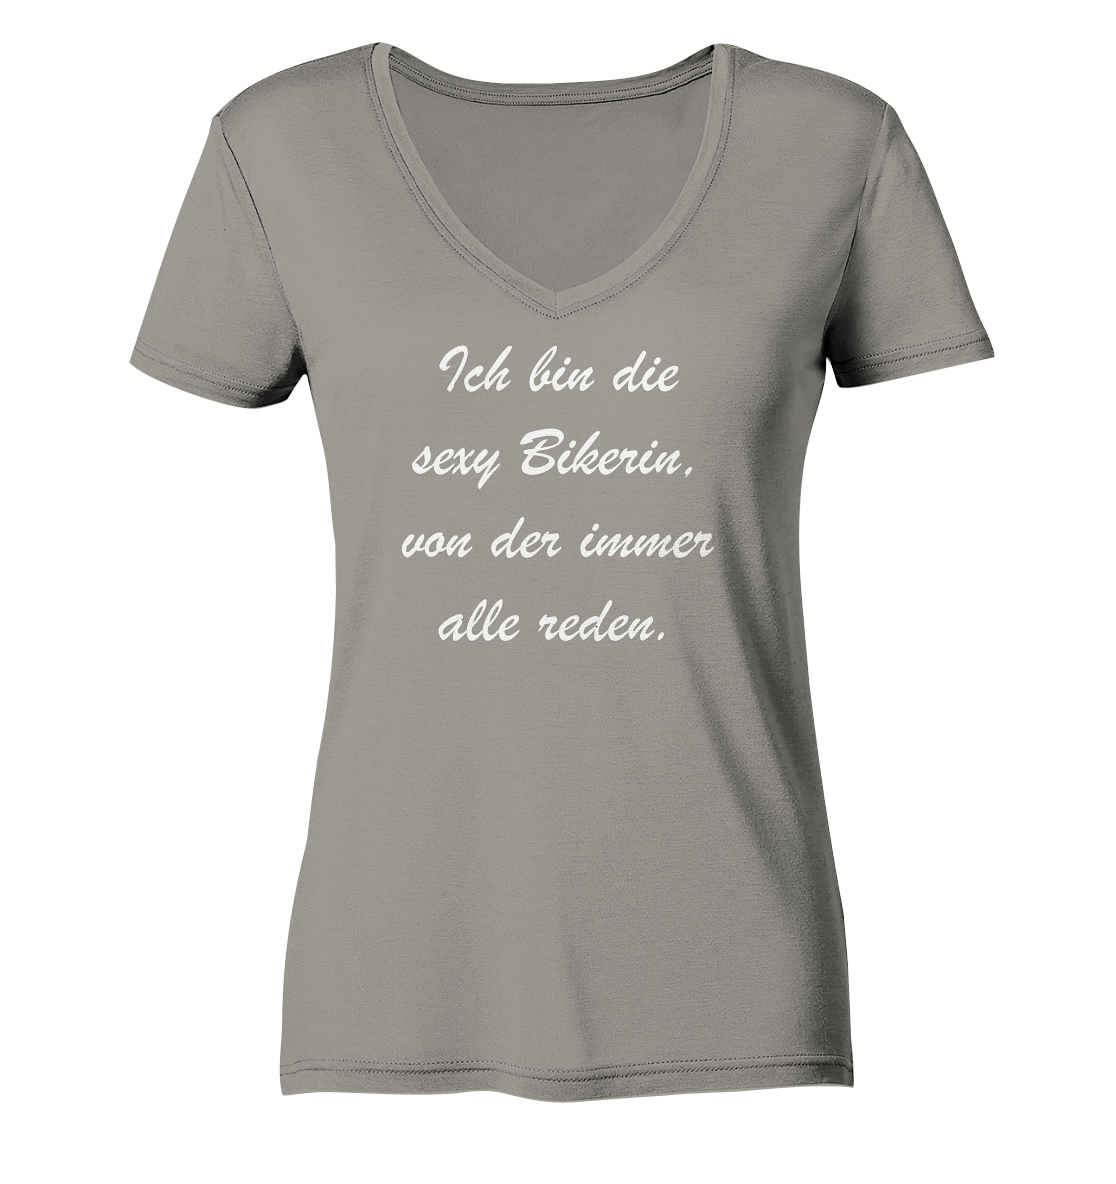 Damen-T-Shirt, V-Ausschnitt, mit weißem Spruch "Ich bin die sexy Bikerin, von der immer alle reden." grau